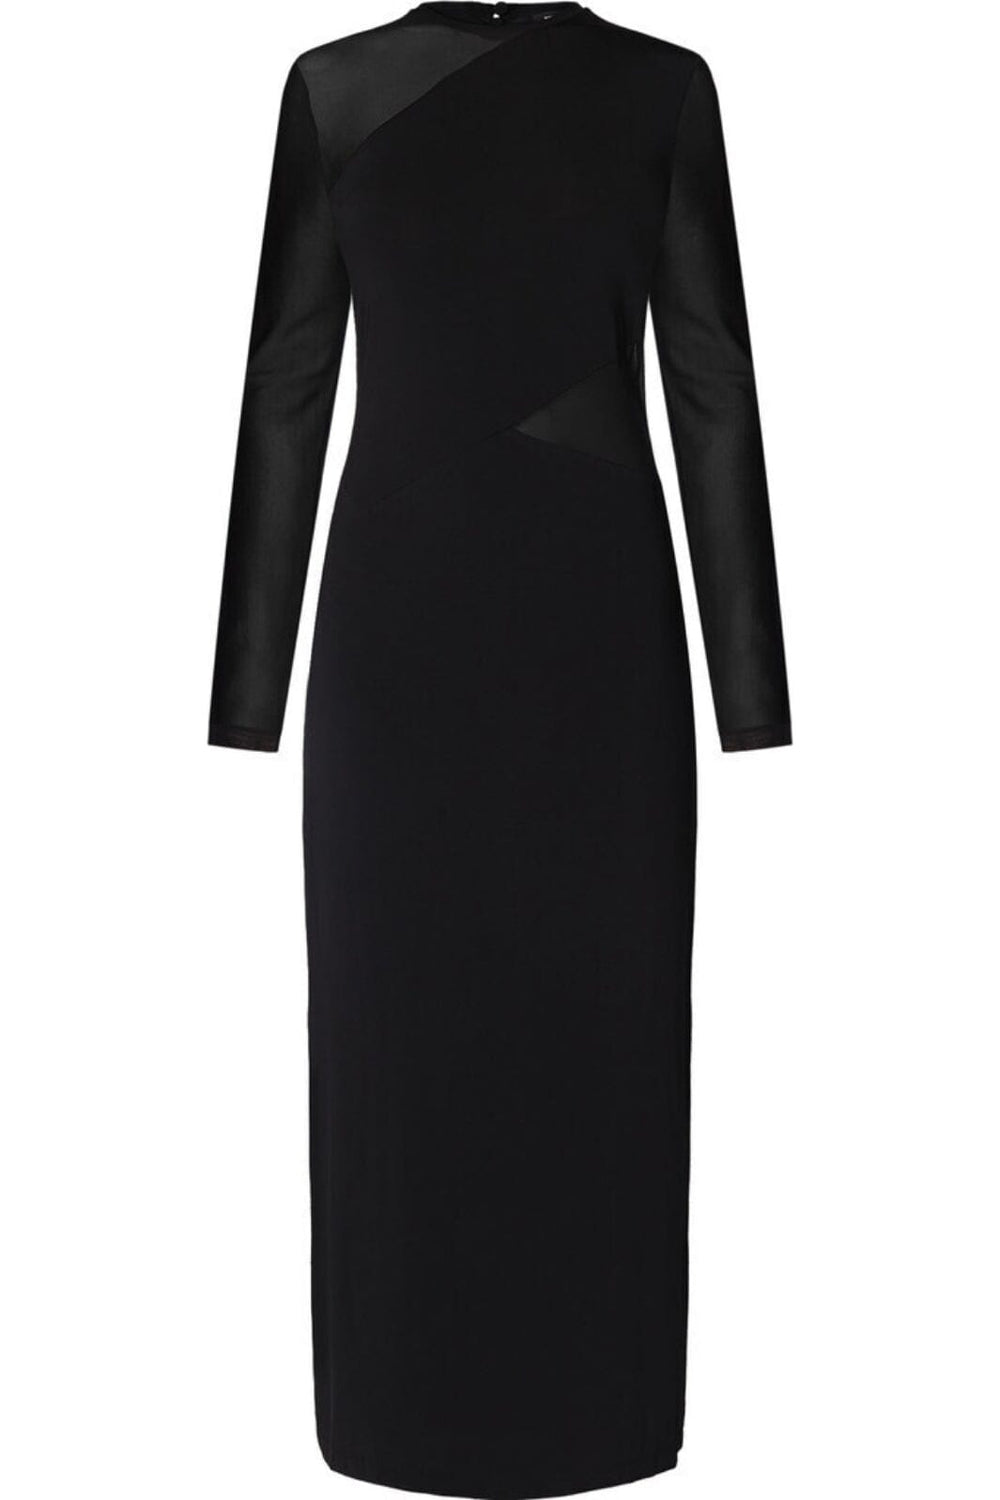 Bruuns Bazaar - Mandevilla Dorra dress - Black Kjoler 